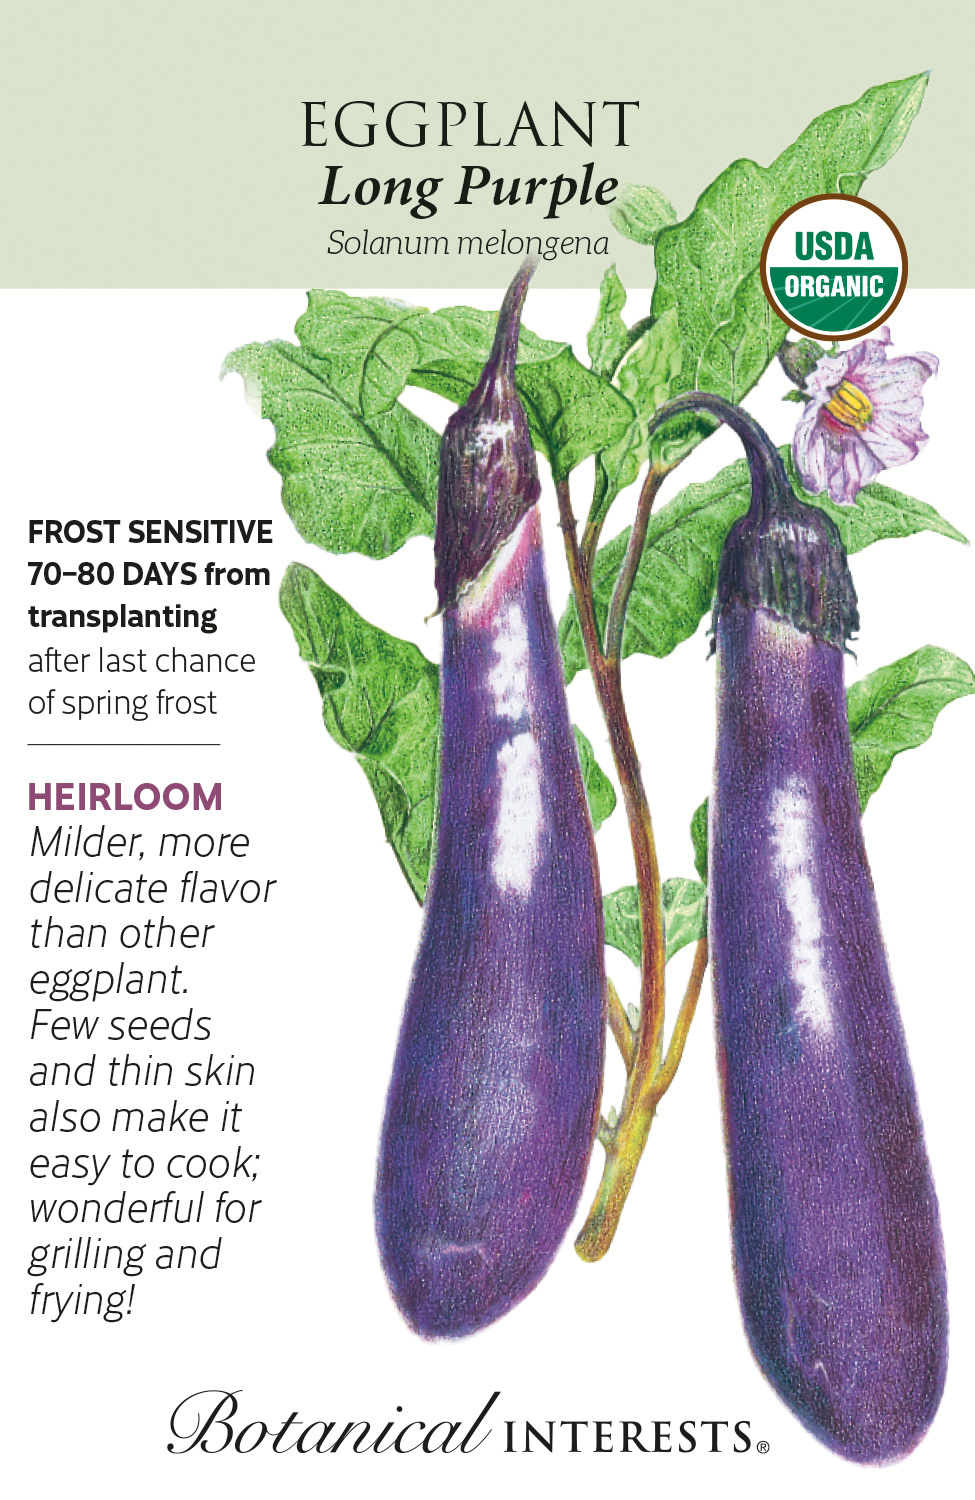 Seed Veg Eggplant Long Purple Organic Heirloom - Solanum melongena